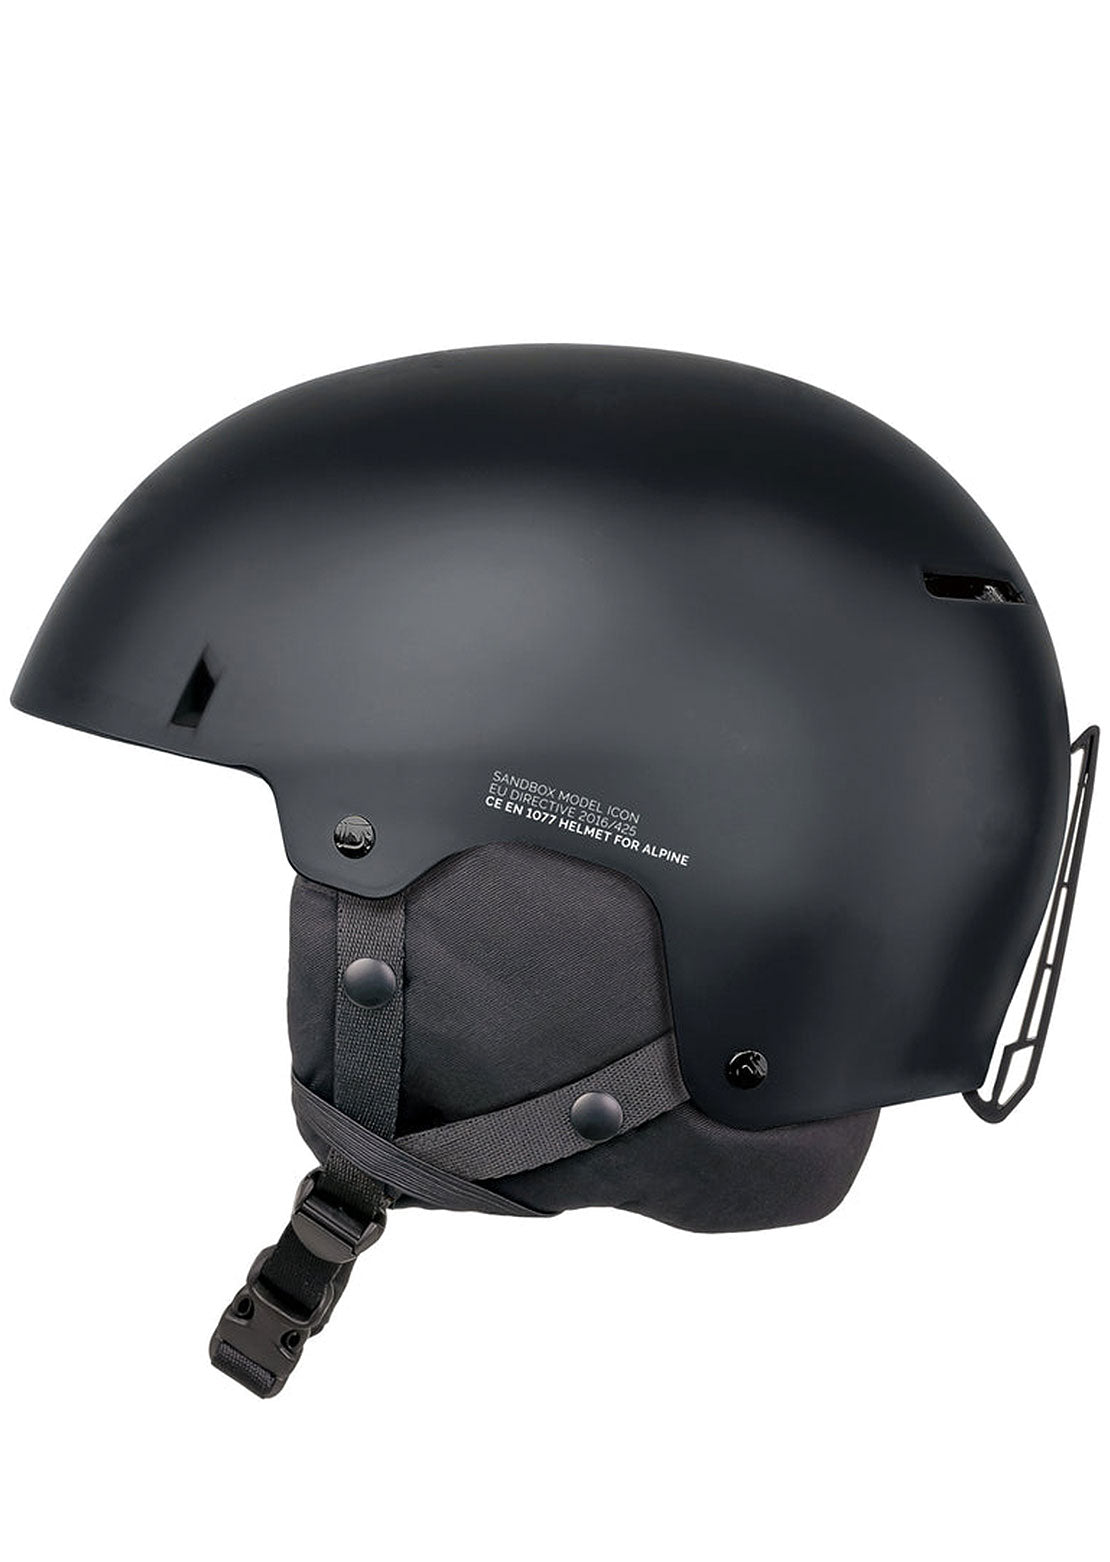 Sandbox Unisex Icon Snow Winter Helmet Graphite